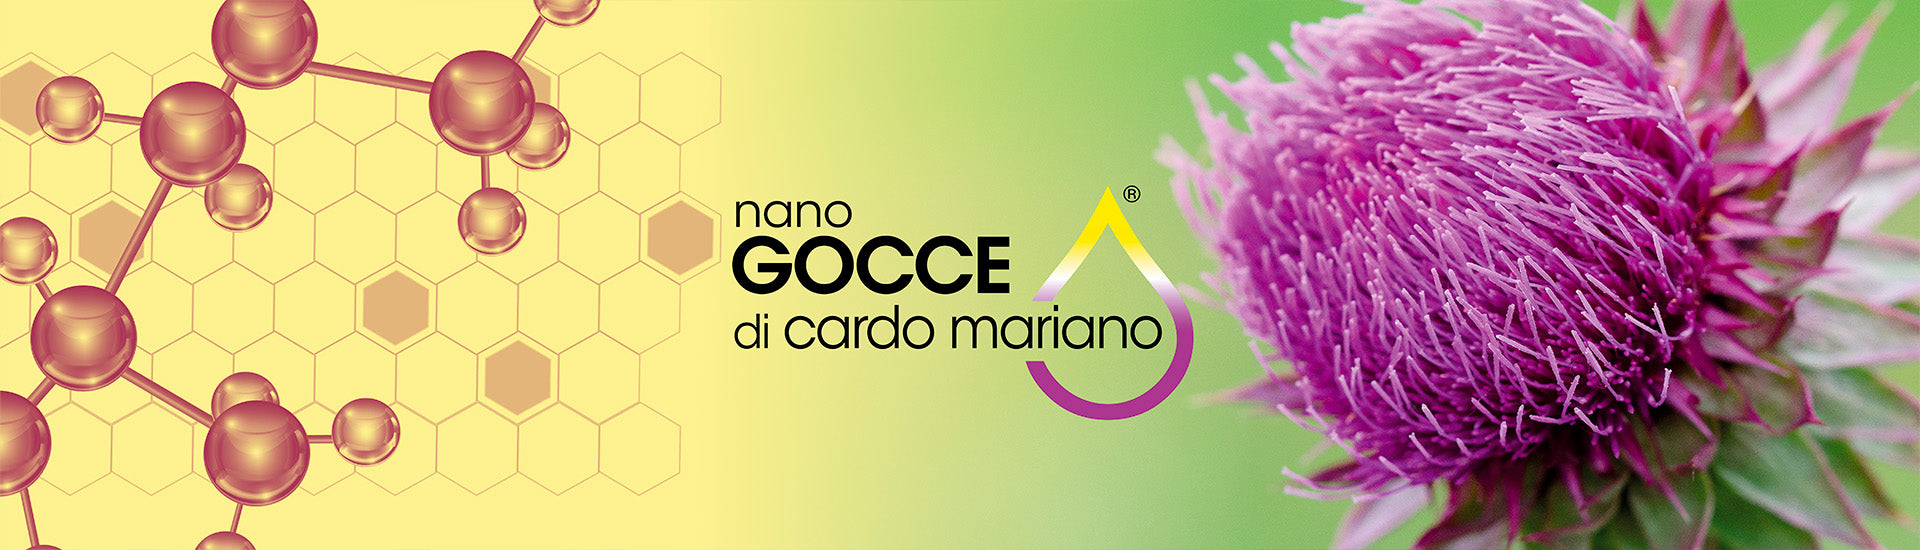 Esclusivo CARDO MARIANO COLLOIDALE - Integratore Colloidale Puro - Nano Gocce BIOMED 1000 ppm